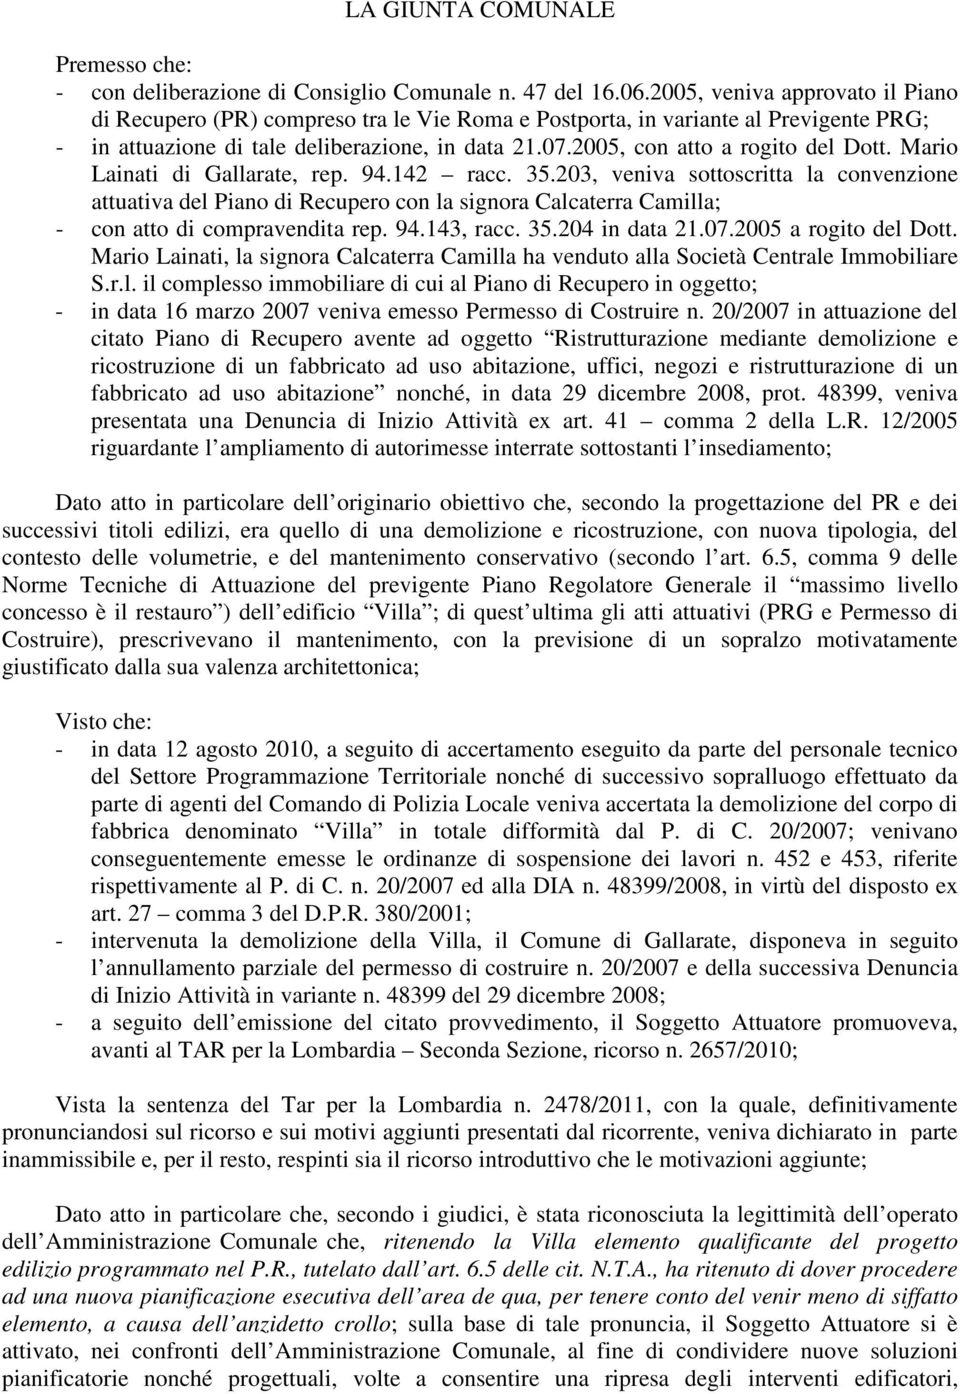 2005, con atto a rogito del Dott. Mario Lainati di Gallarate, rep. 94.142 racc. 35.